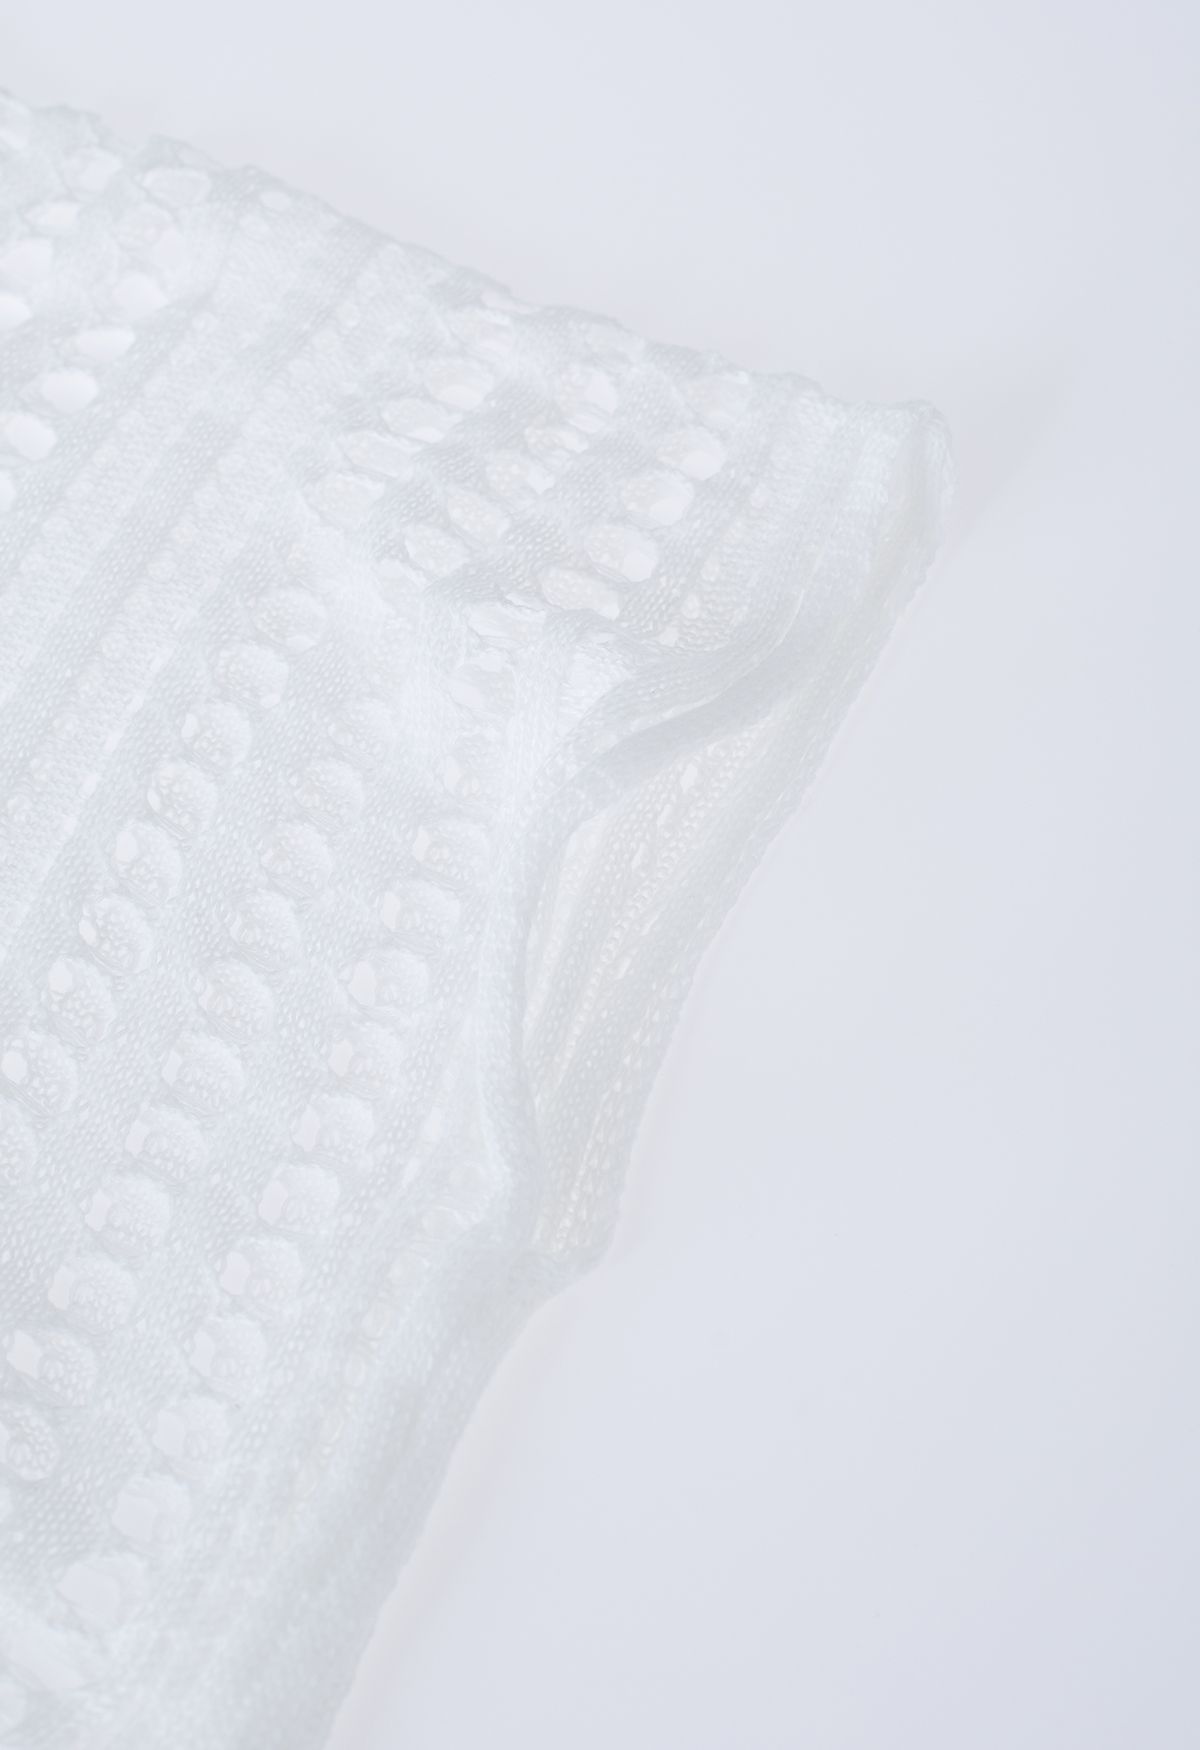 Couverture en tricot ajouré à fentes latérales en blanc